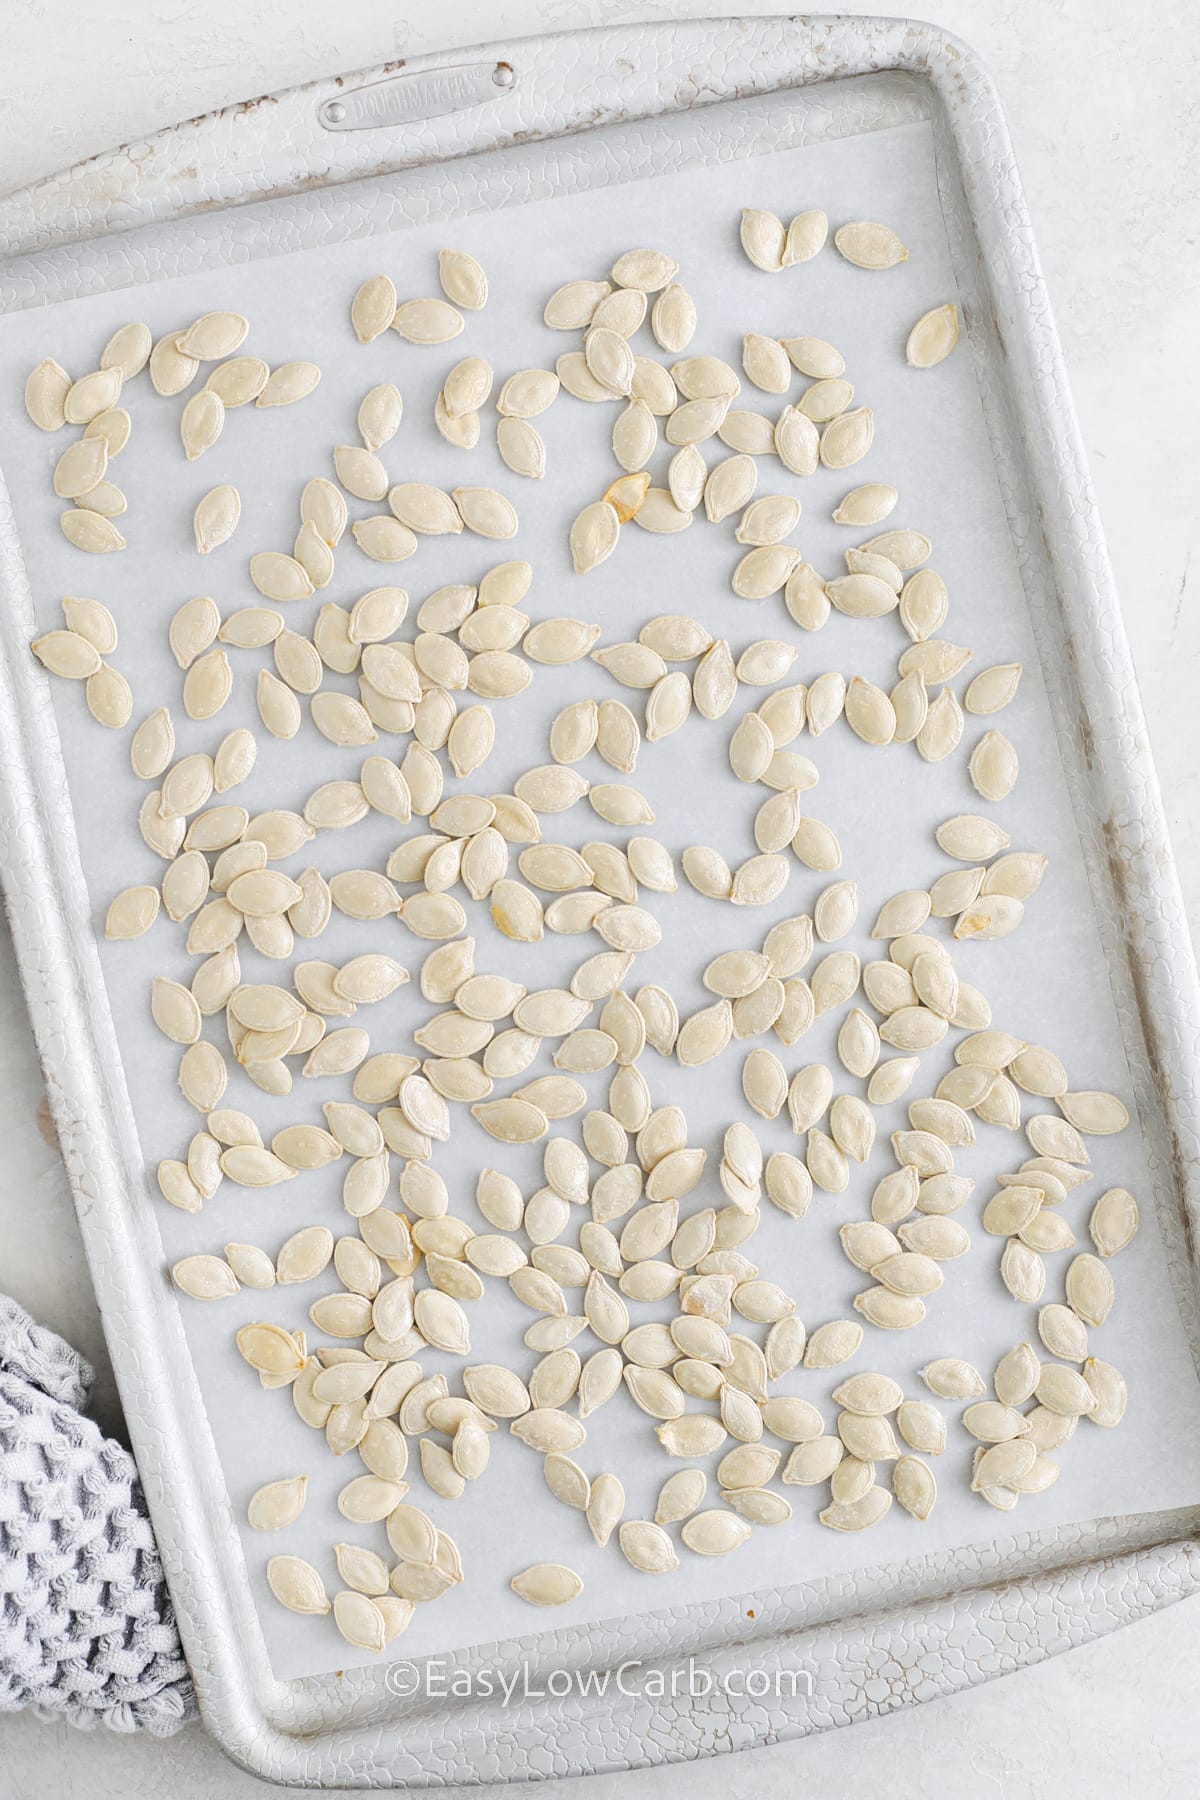 unbaked pumpkin seeds on a sheet pan